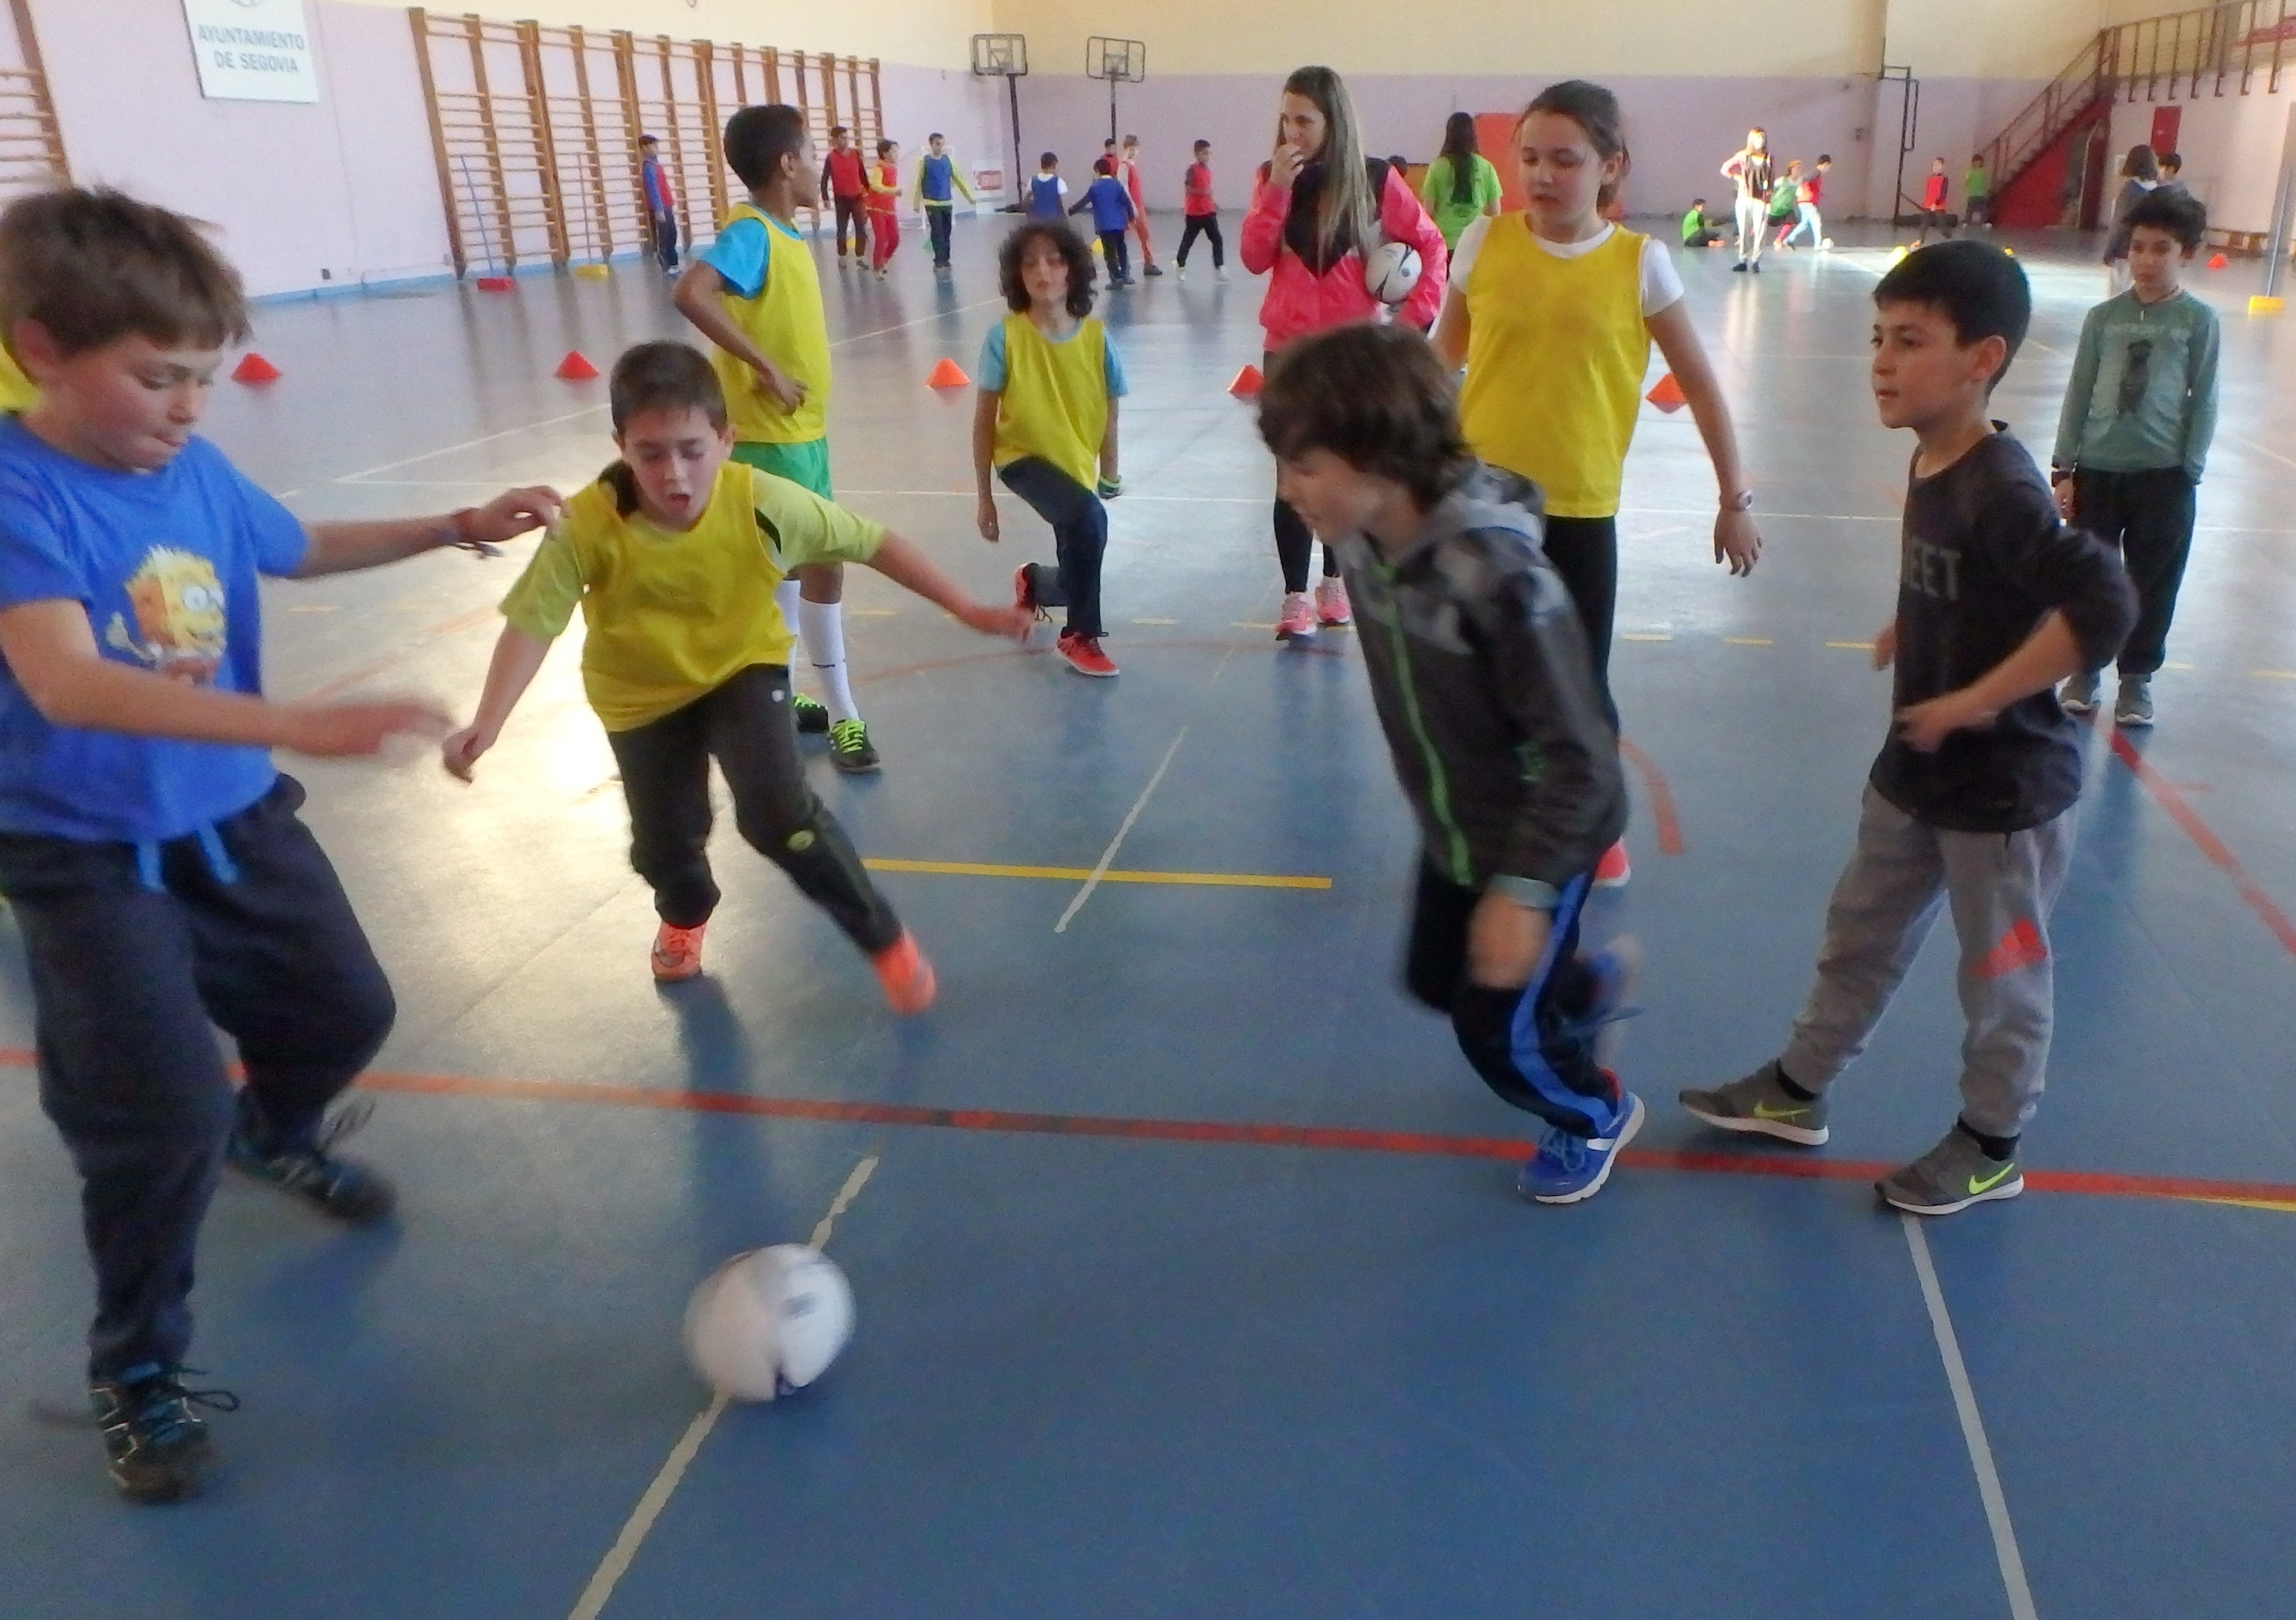 Fútbol, Baloncesto y Juegos del Mundo en los encuentros de Deporte Escolar